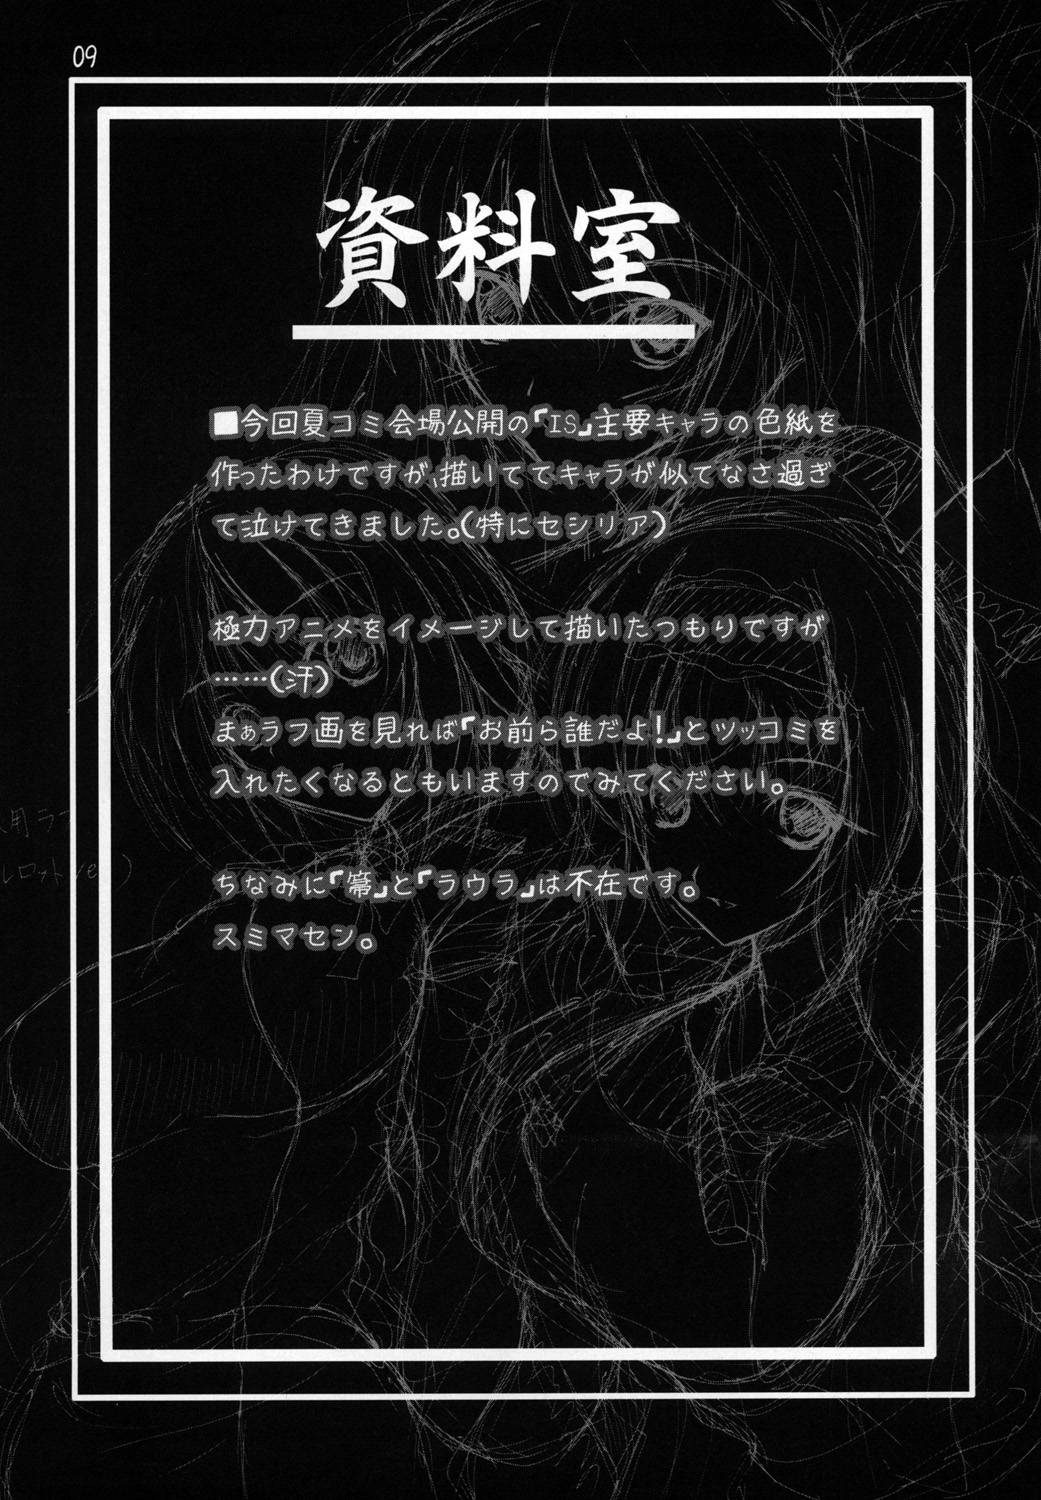 [Heaven'sIsen] とにかく山田先生が可愛いから描いた本なんです。 (インフィニット・ストラトス)